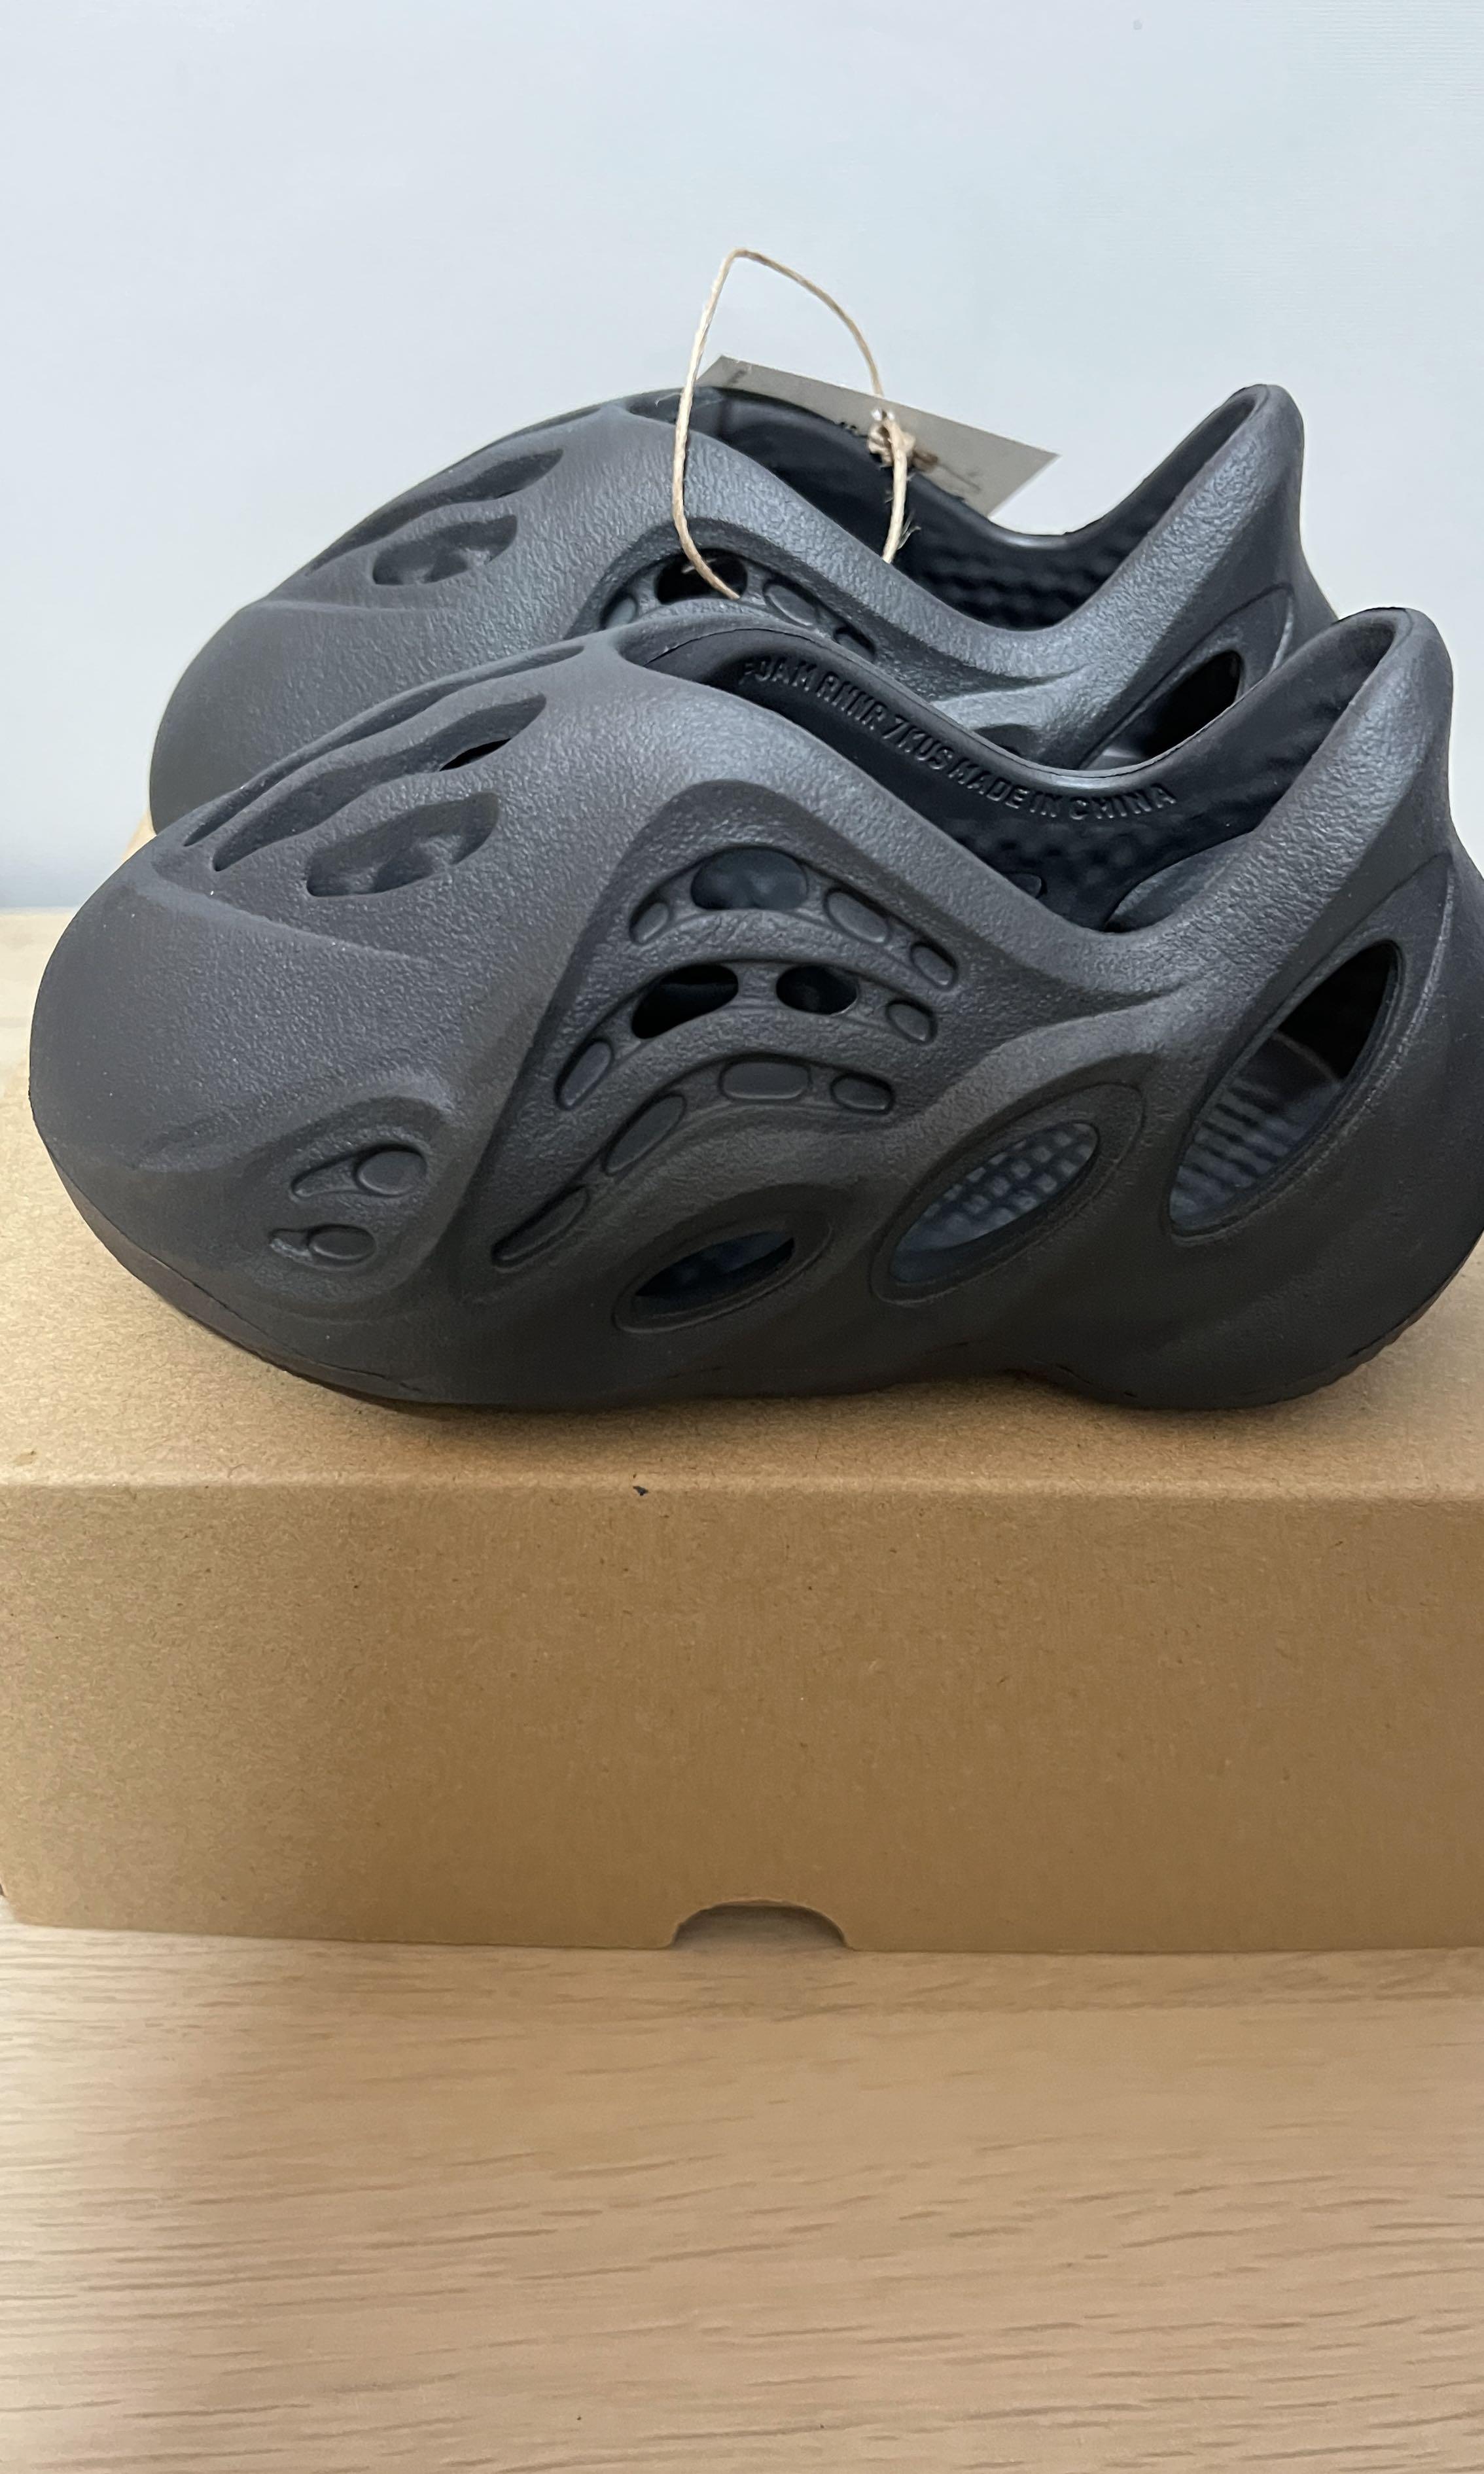 Yeezy Foam Runner Onyx Infant US7K, Men's Fashion, Footwear